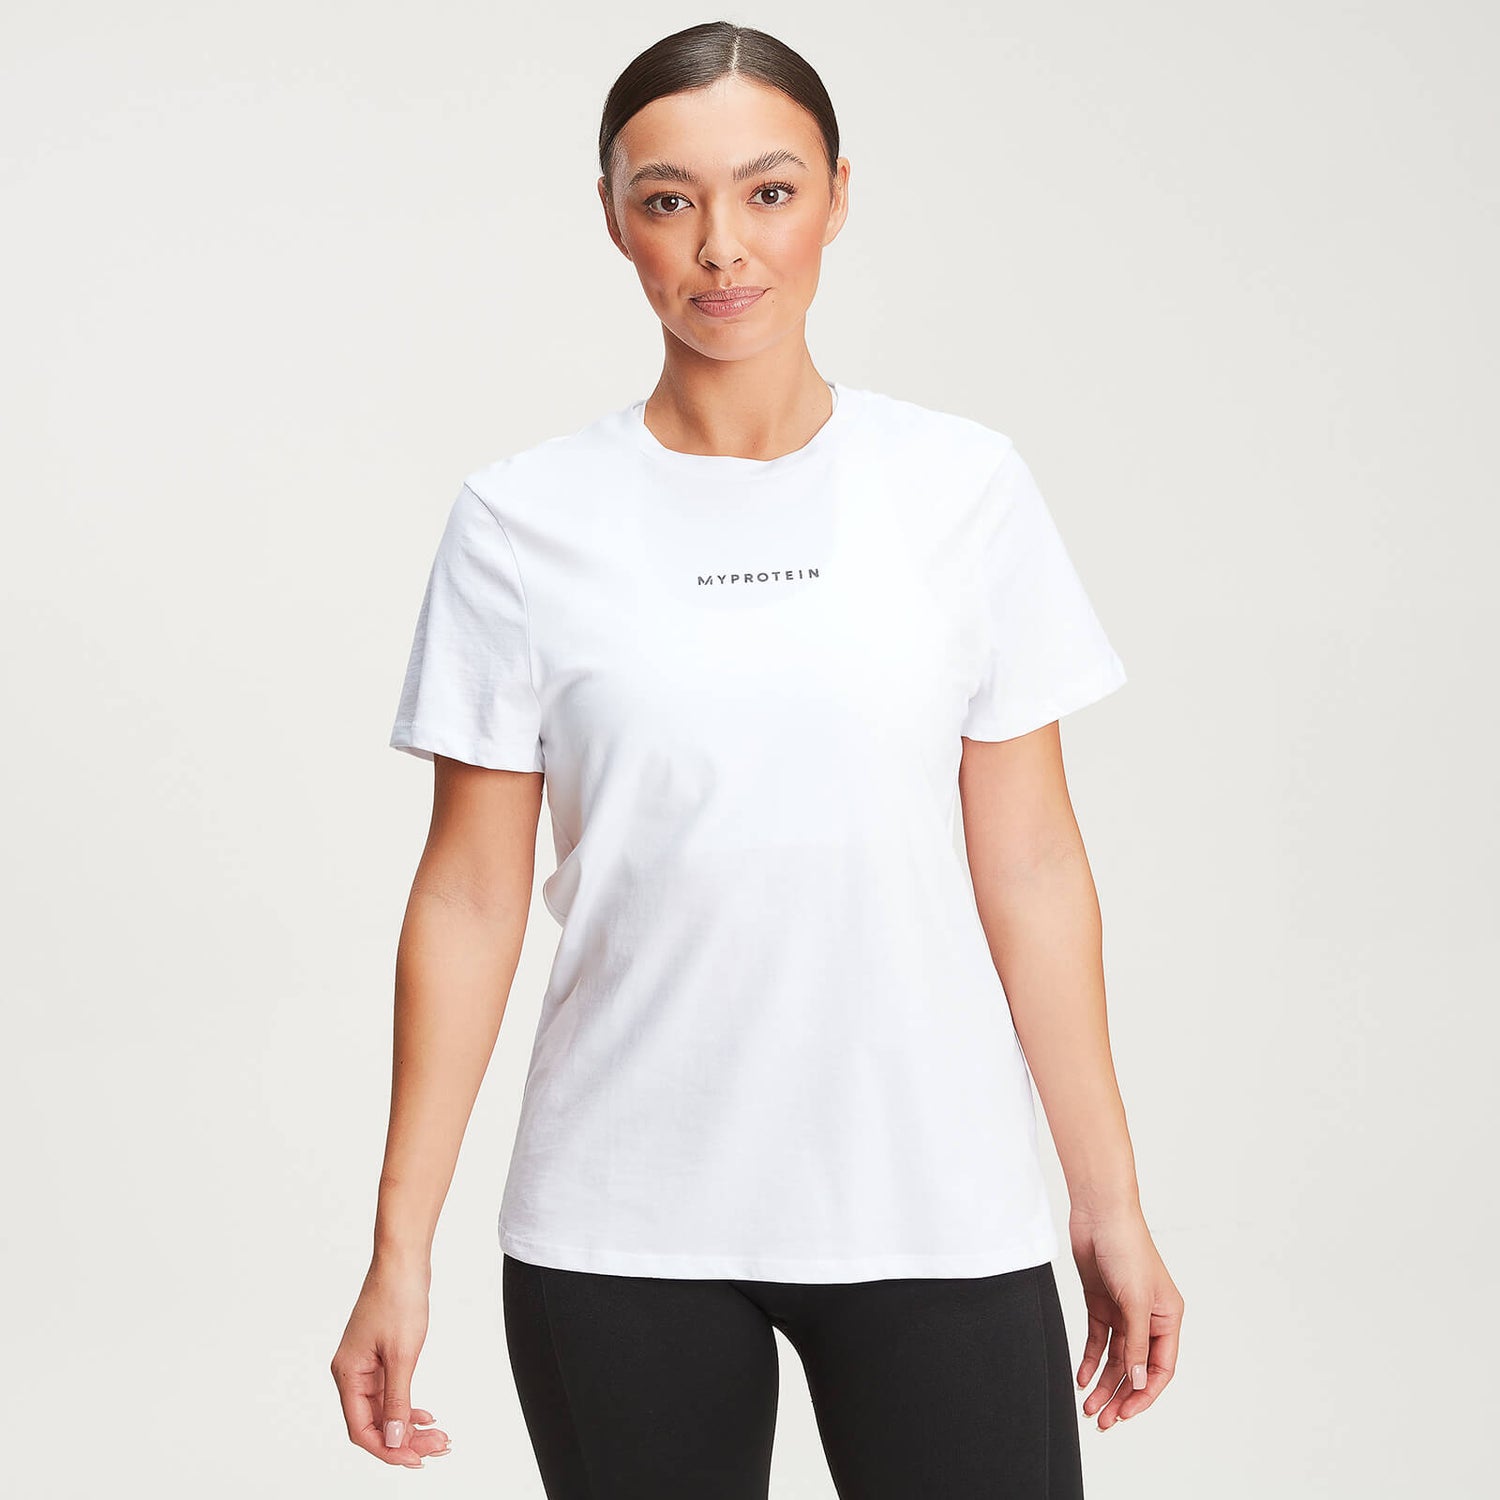 Damen New Originals Aktuell T-Shirt - Weiß - XS